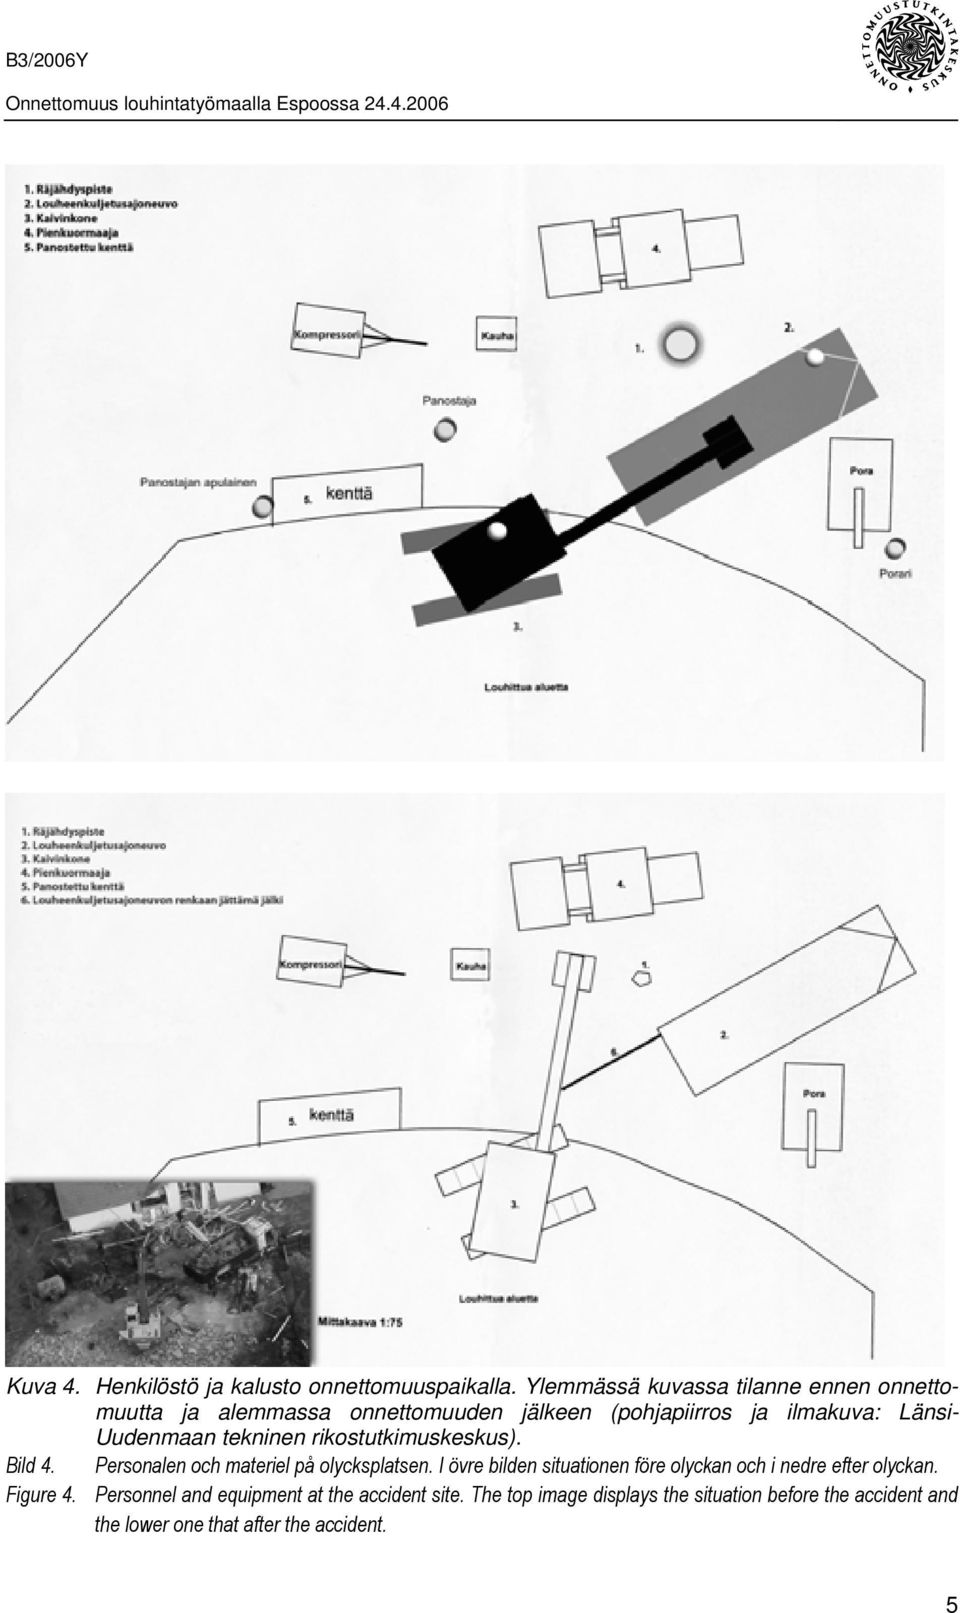 Uudenmaan tekninen rikostutkimuskeskus). Bild 4. Personalen och materiel på olycksplatsen.